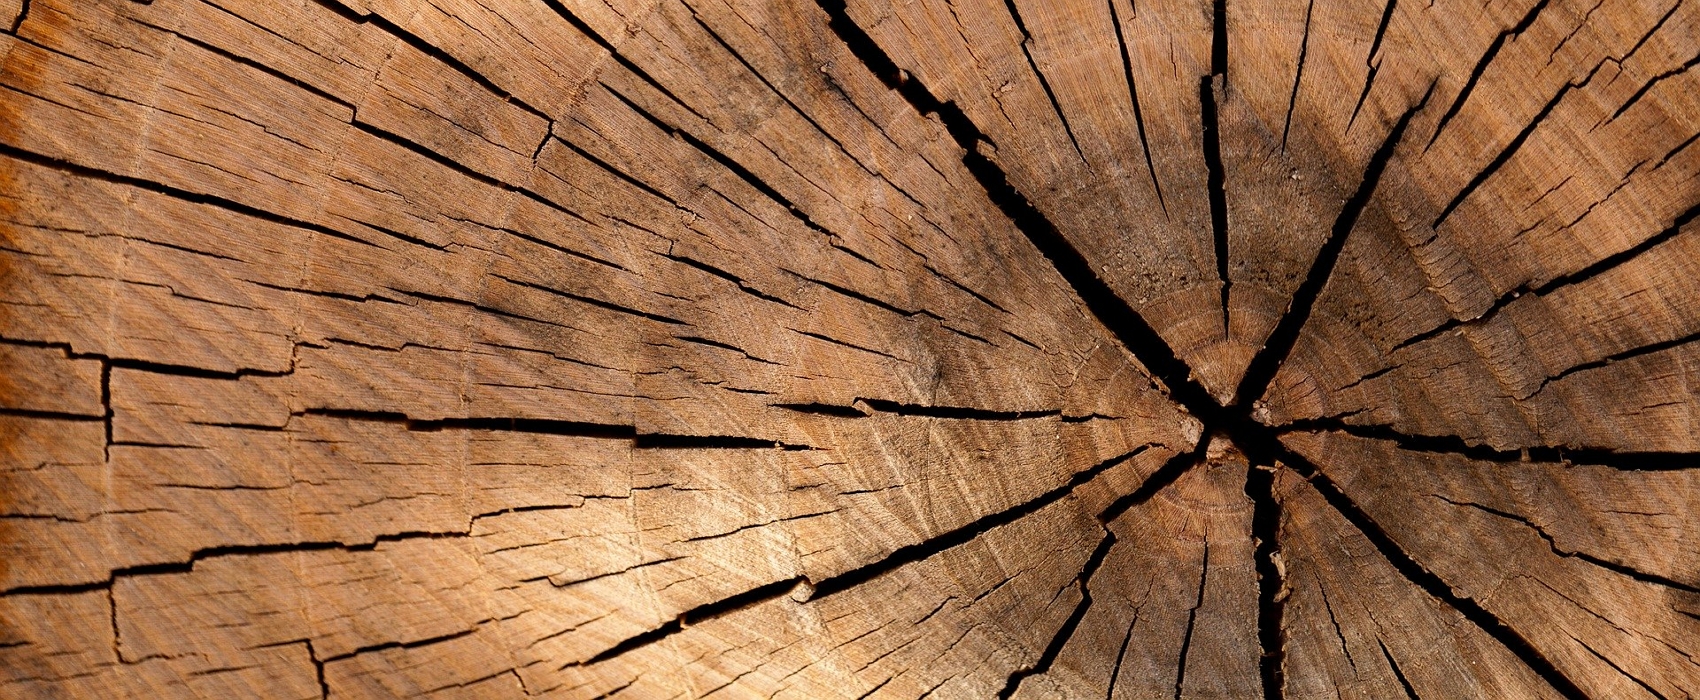 Les bois exotiques sont naturellement plus résistants à l’humidité © Daniel Spase, pxhere.com